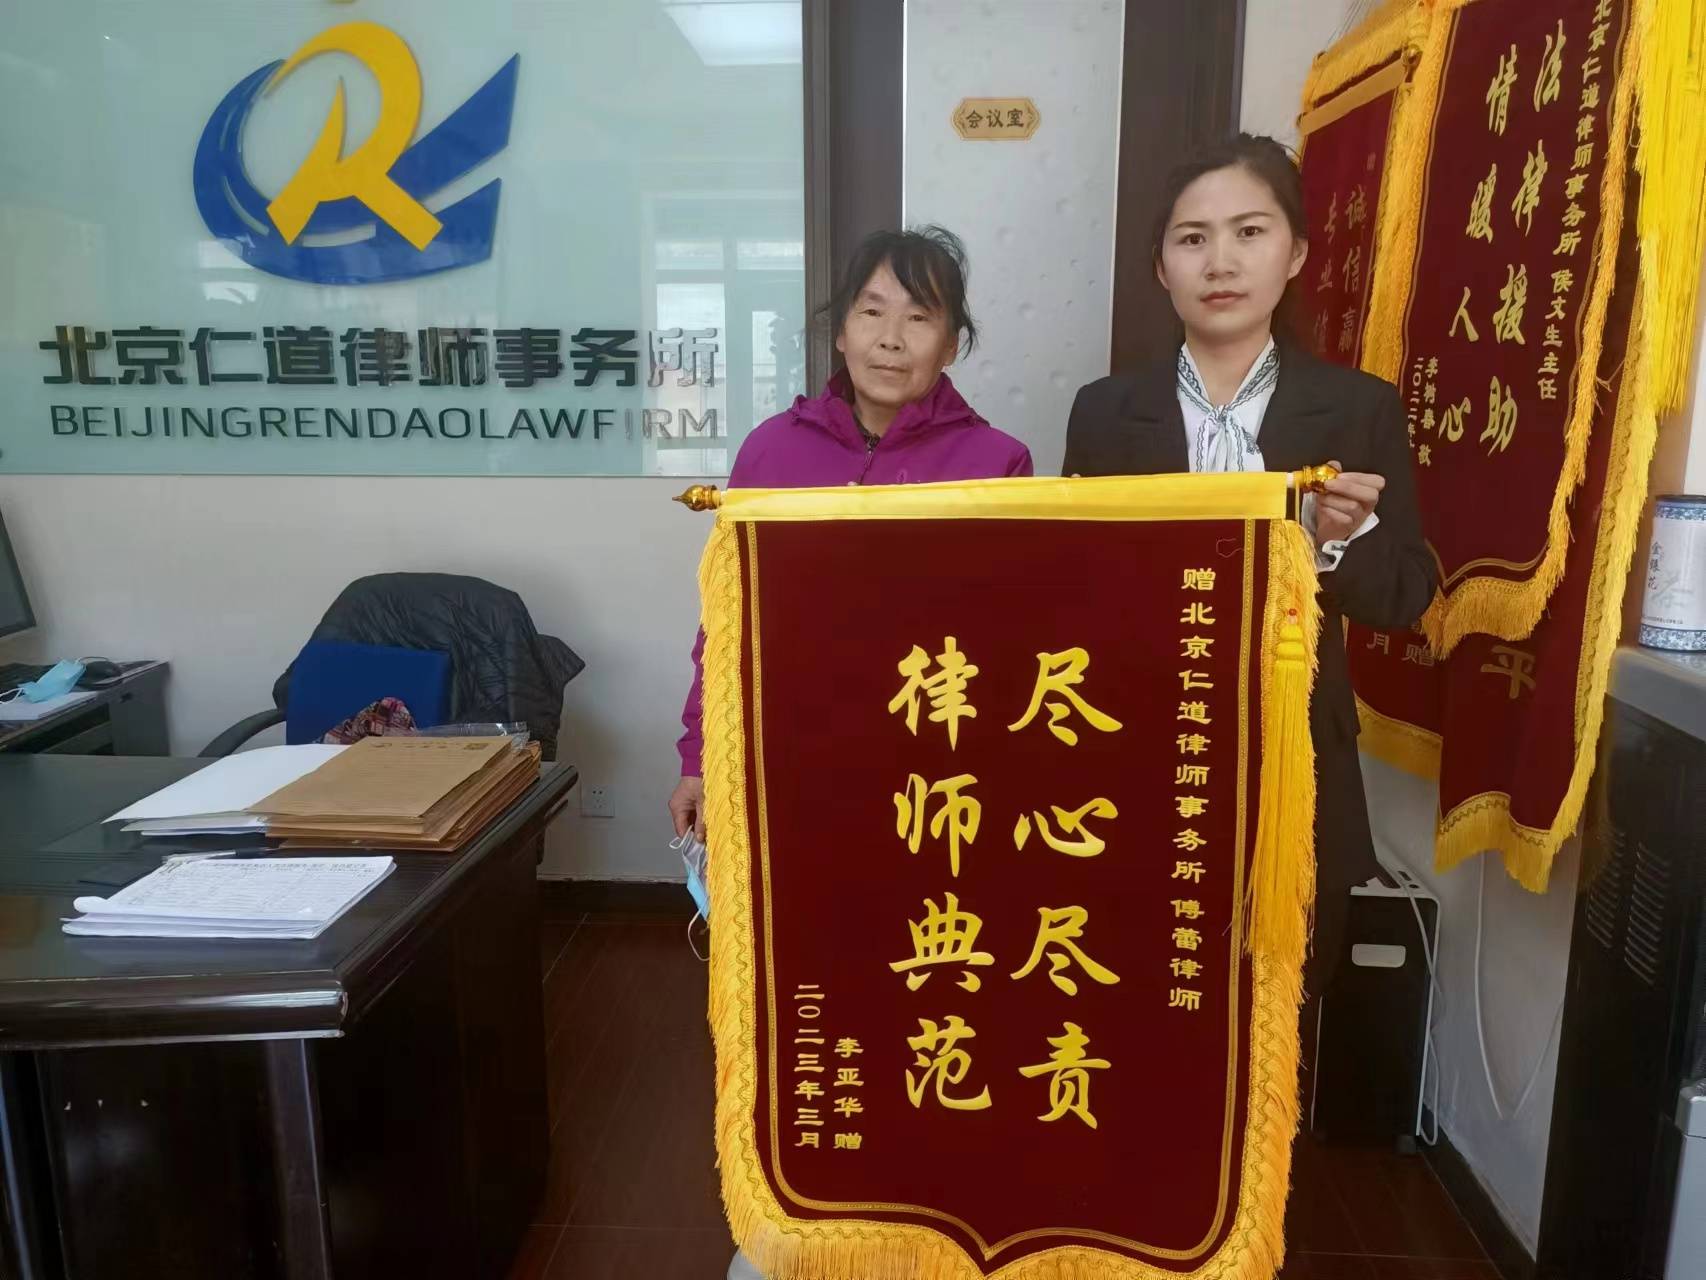 李亚华赠北京仁道律师事务所傅蕾蕾律师锦旗